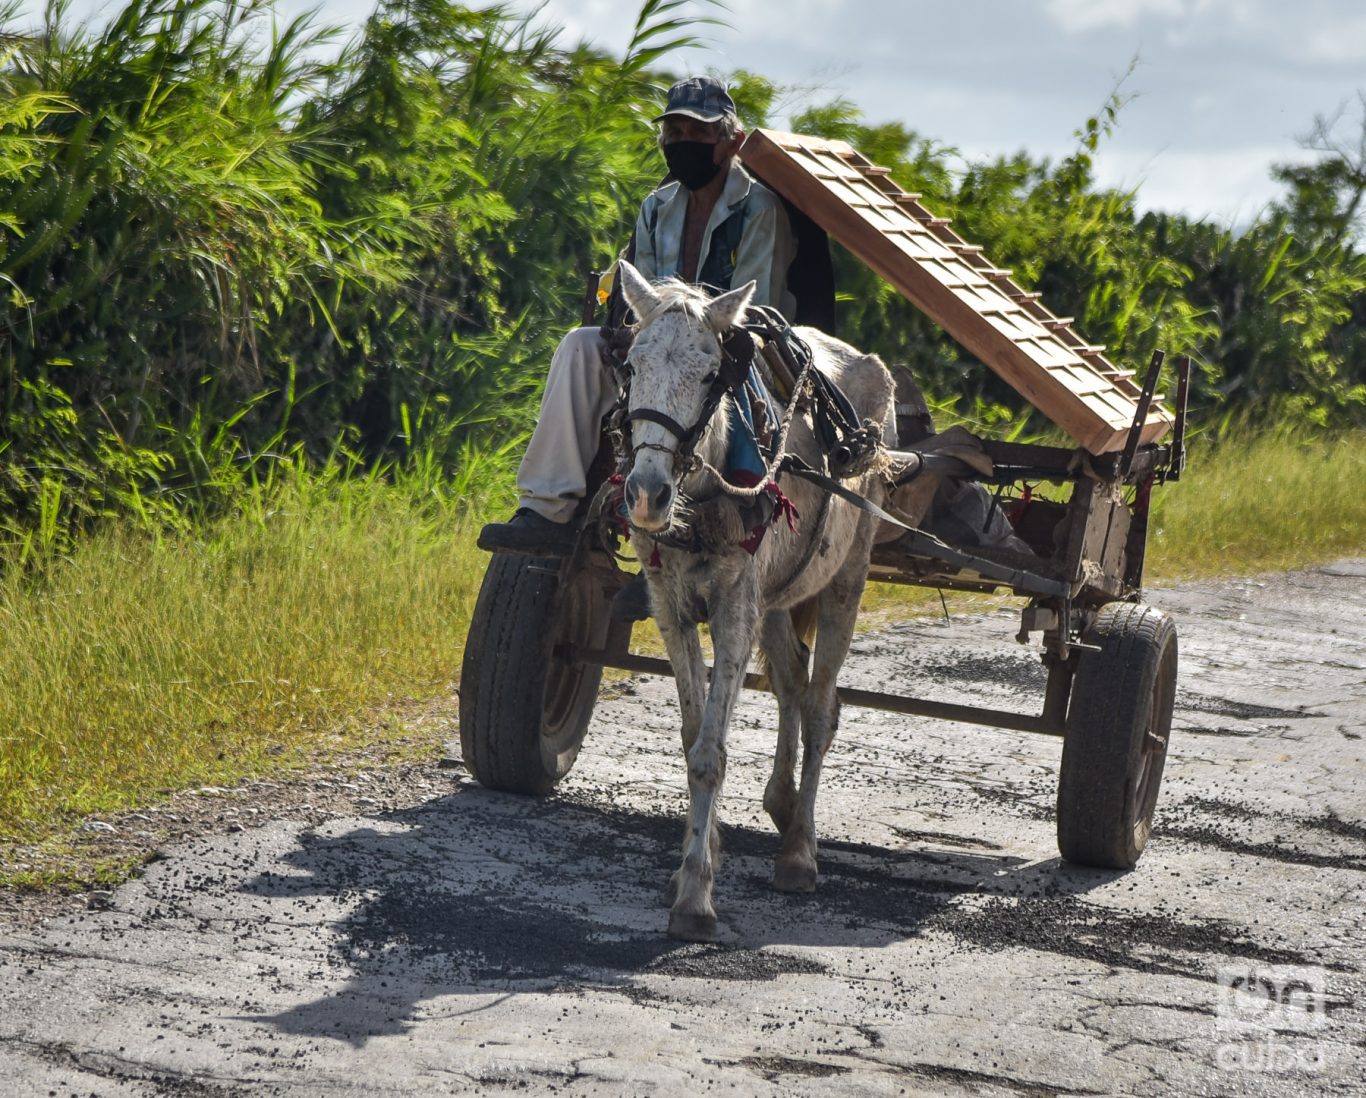 Carretón tirado por un caballo endeble por la carretera de Gibara. Foto: Kaloian.
